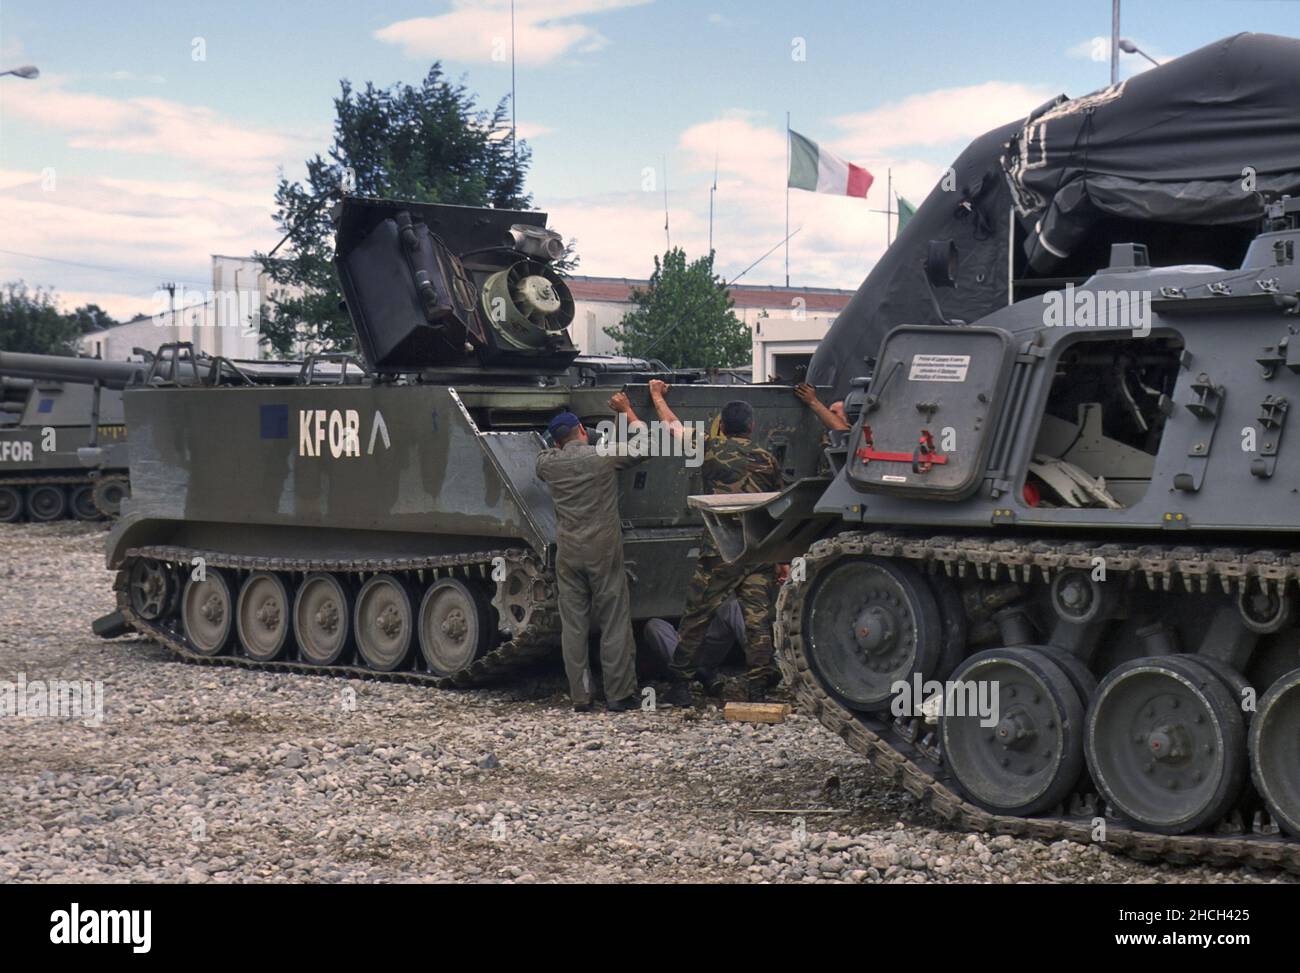 - NATO intervention in Kosovo, maintenance of armoured vehicles at the Italian camp in Peje (July 2000)   - Intervento NATO in Kossovo, manutenzione dei veicoli corazzati presso l'accampamento italiano di Peje (Luglio 2000) Stock Photo